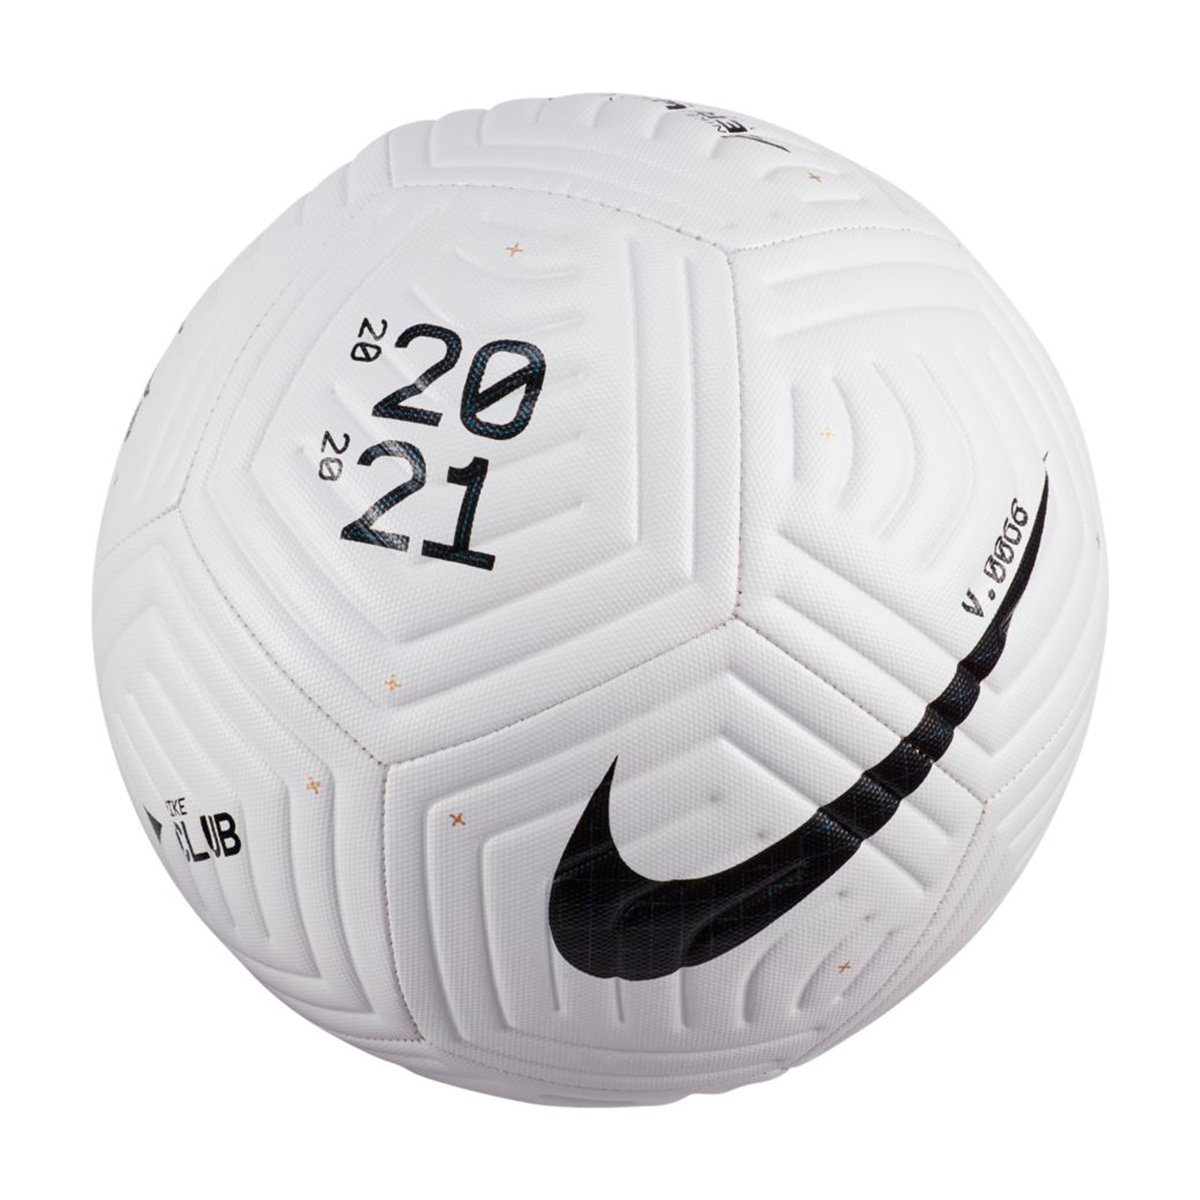 nike soccer ball 2021